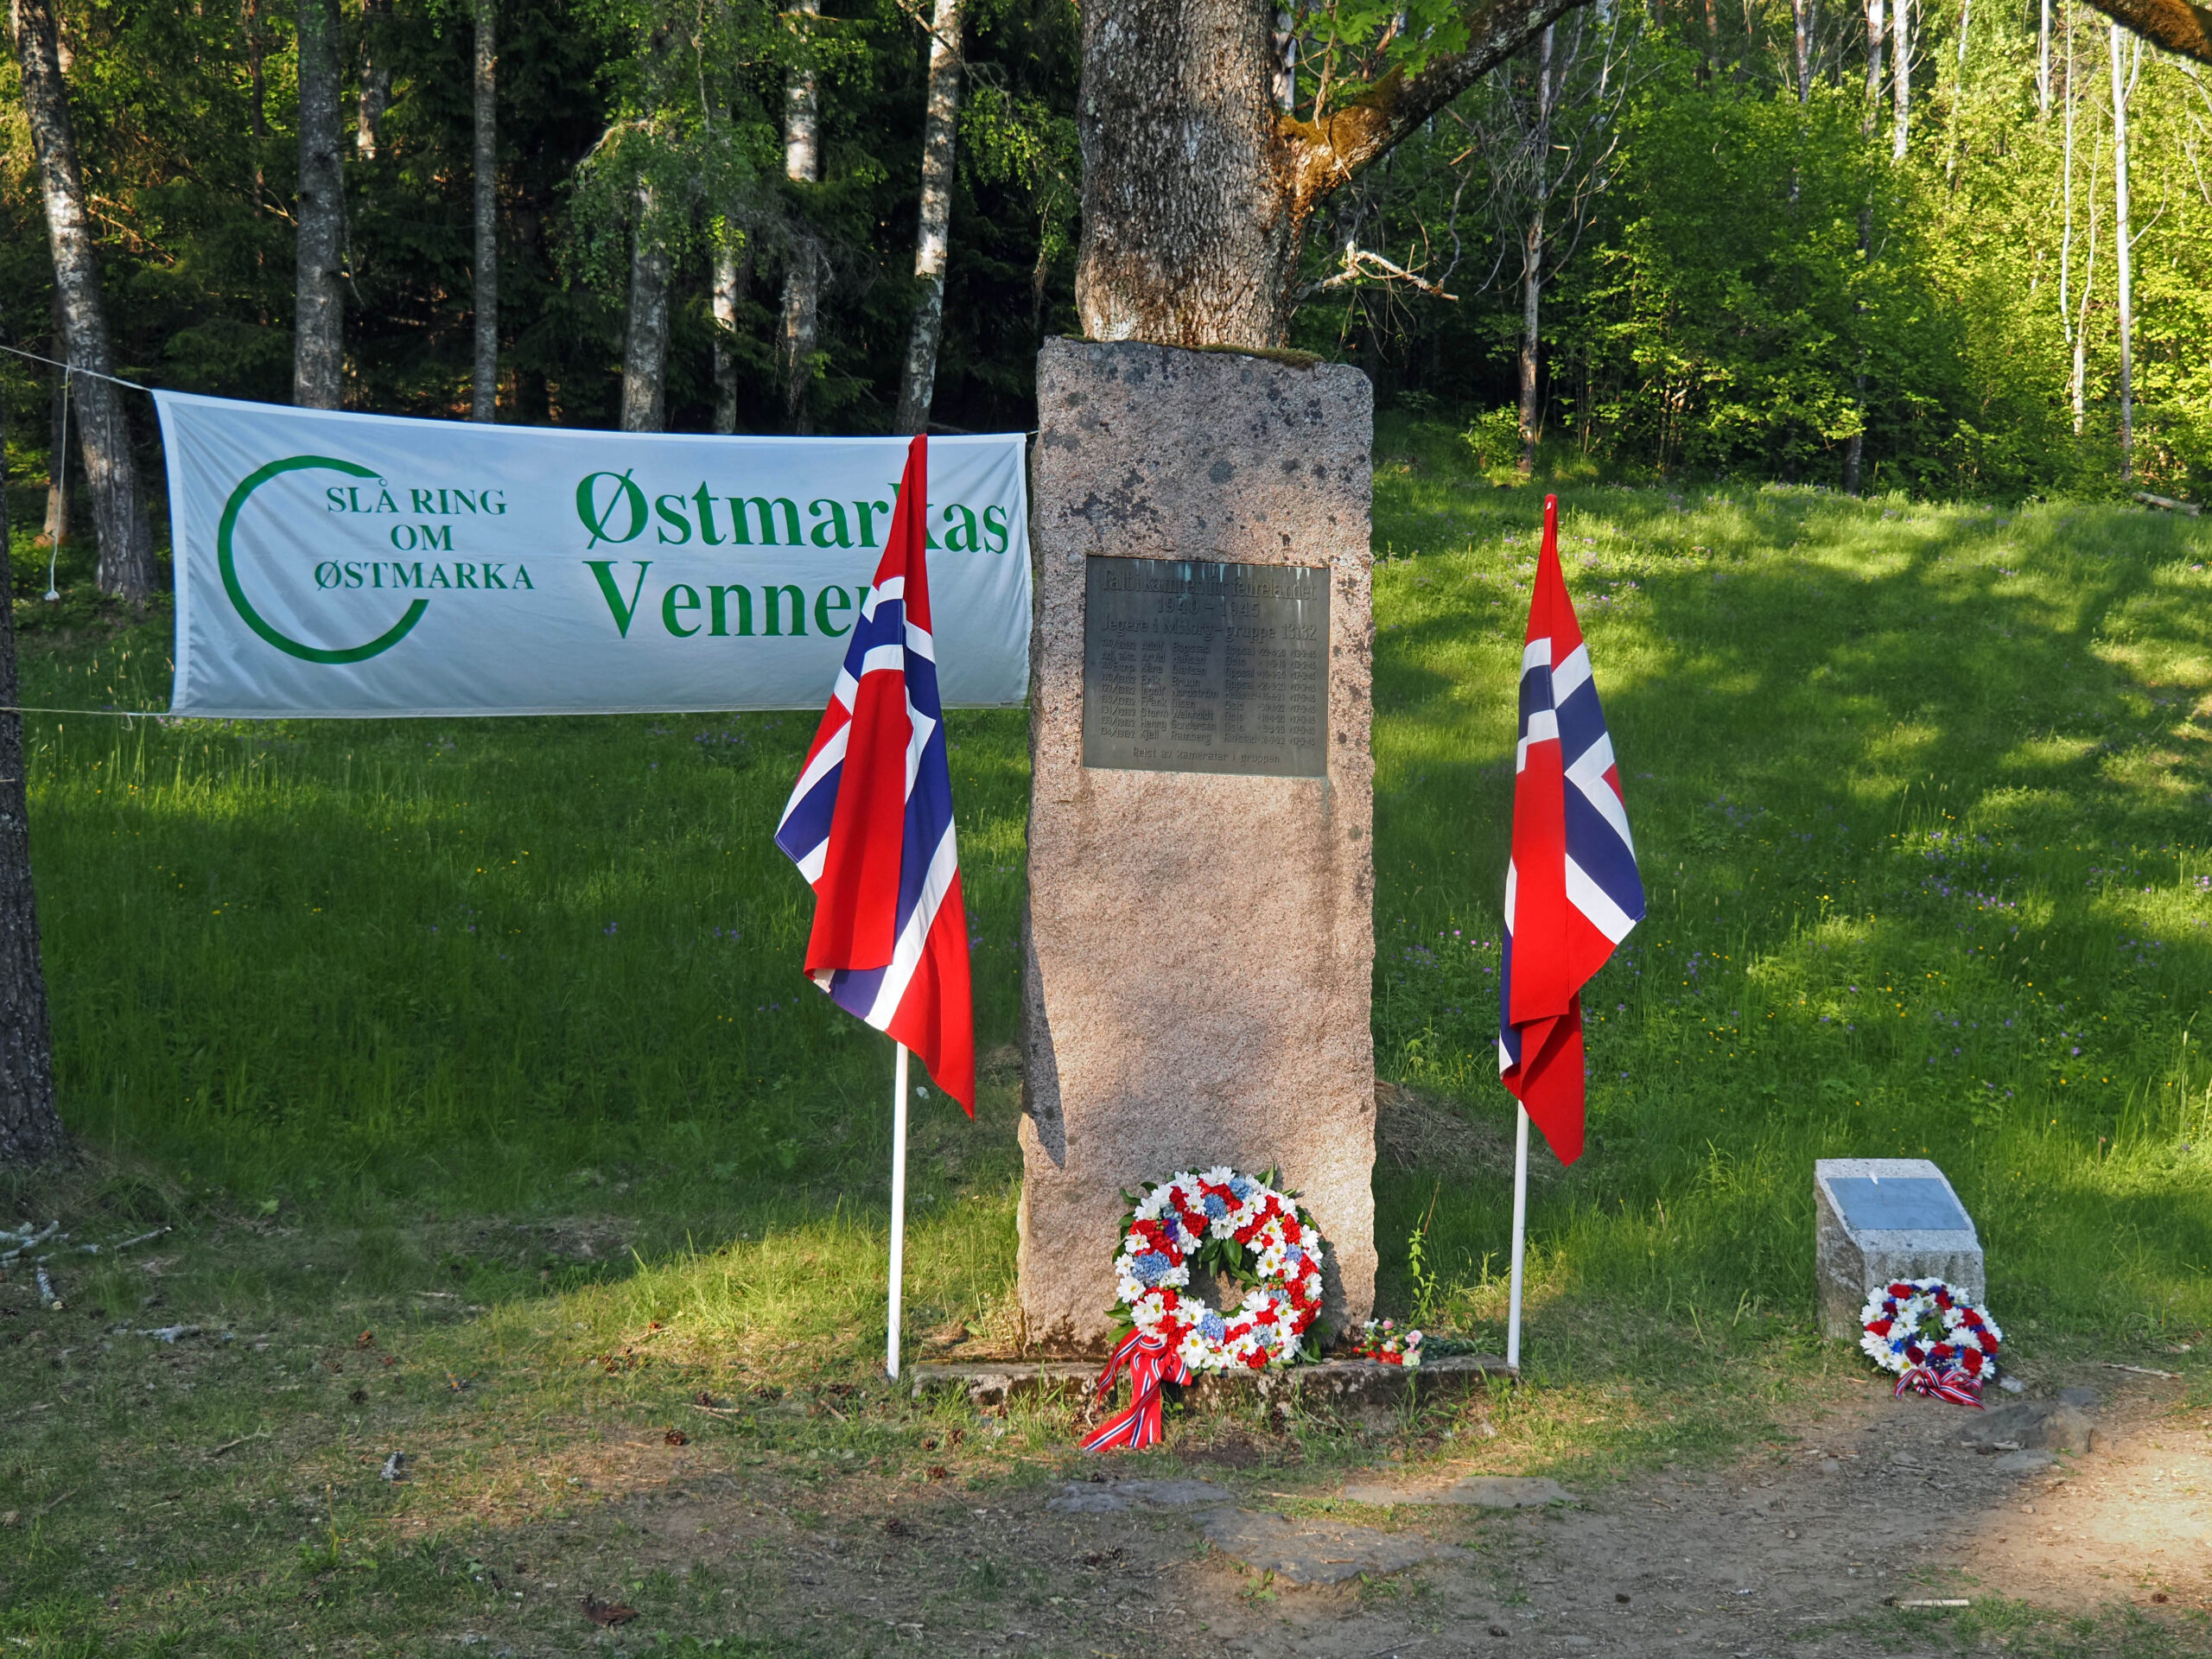 Milorg-bautaen og en minneplakett står ved siden av skogsveien fra Østmarksetra mot Mariholtet og Rustadsaga. Kransene ble nedlagt under årets arrangement.